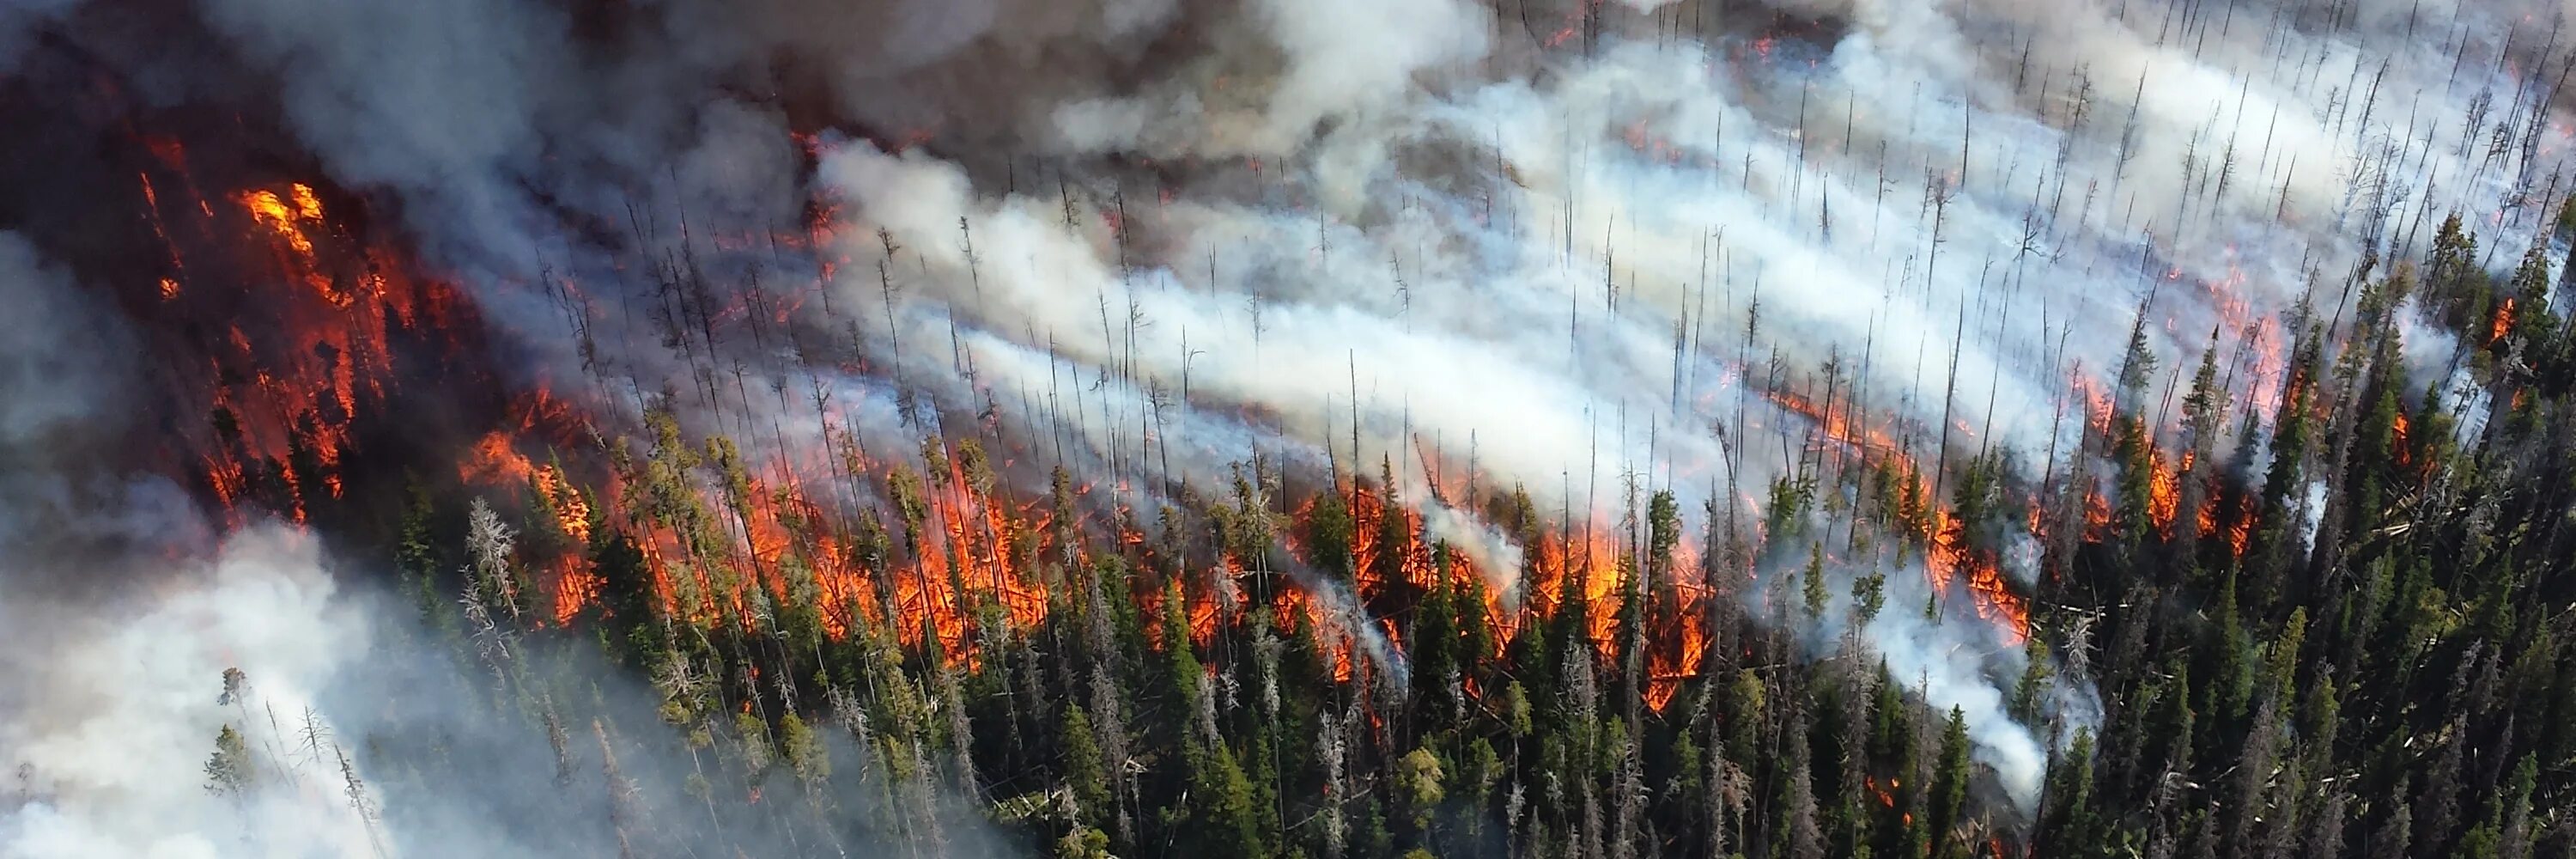 Газ горящий воздух. Йеллоустонский национальный парк пожары. Пожар на природе. Загрязнение атмосферы пожарами. Загрязнение воздуха лесными пожарами.